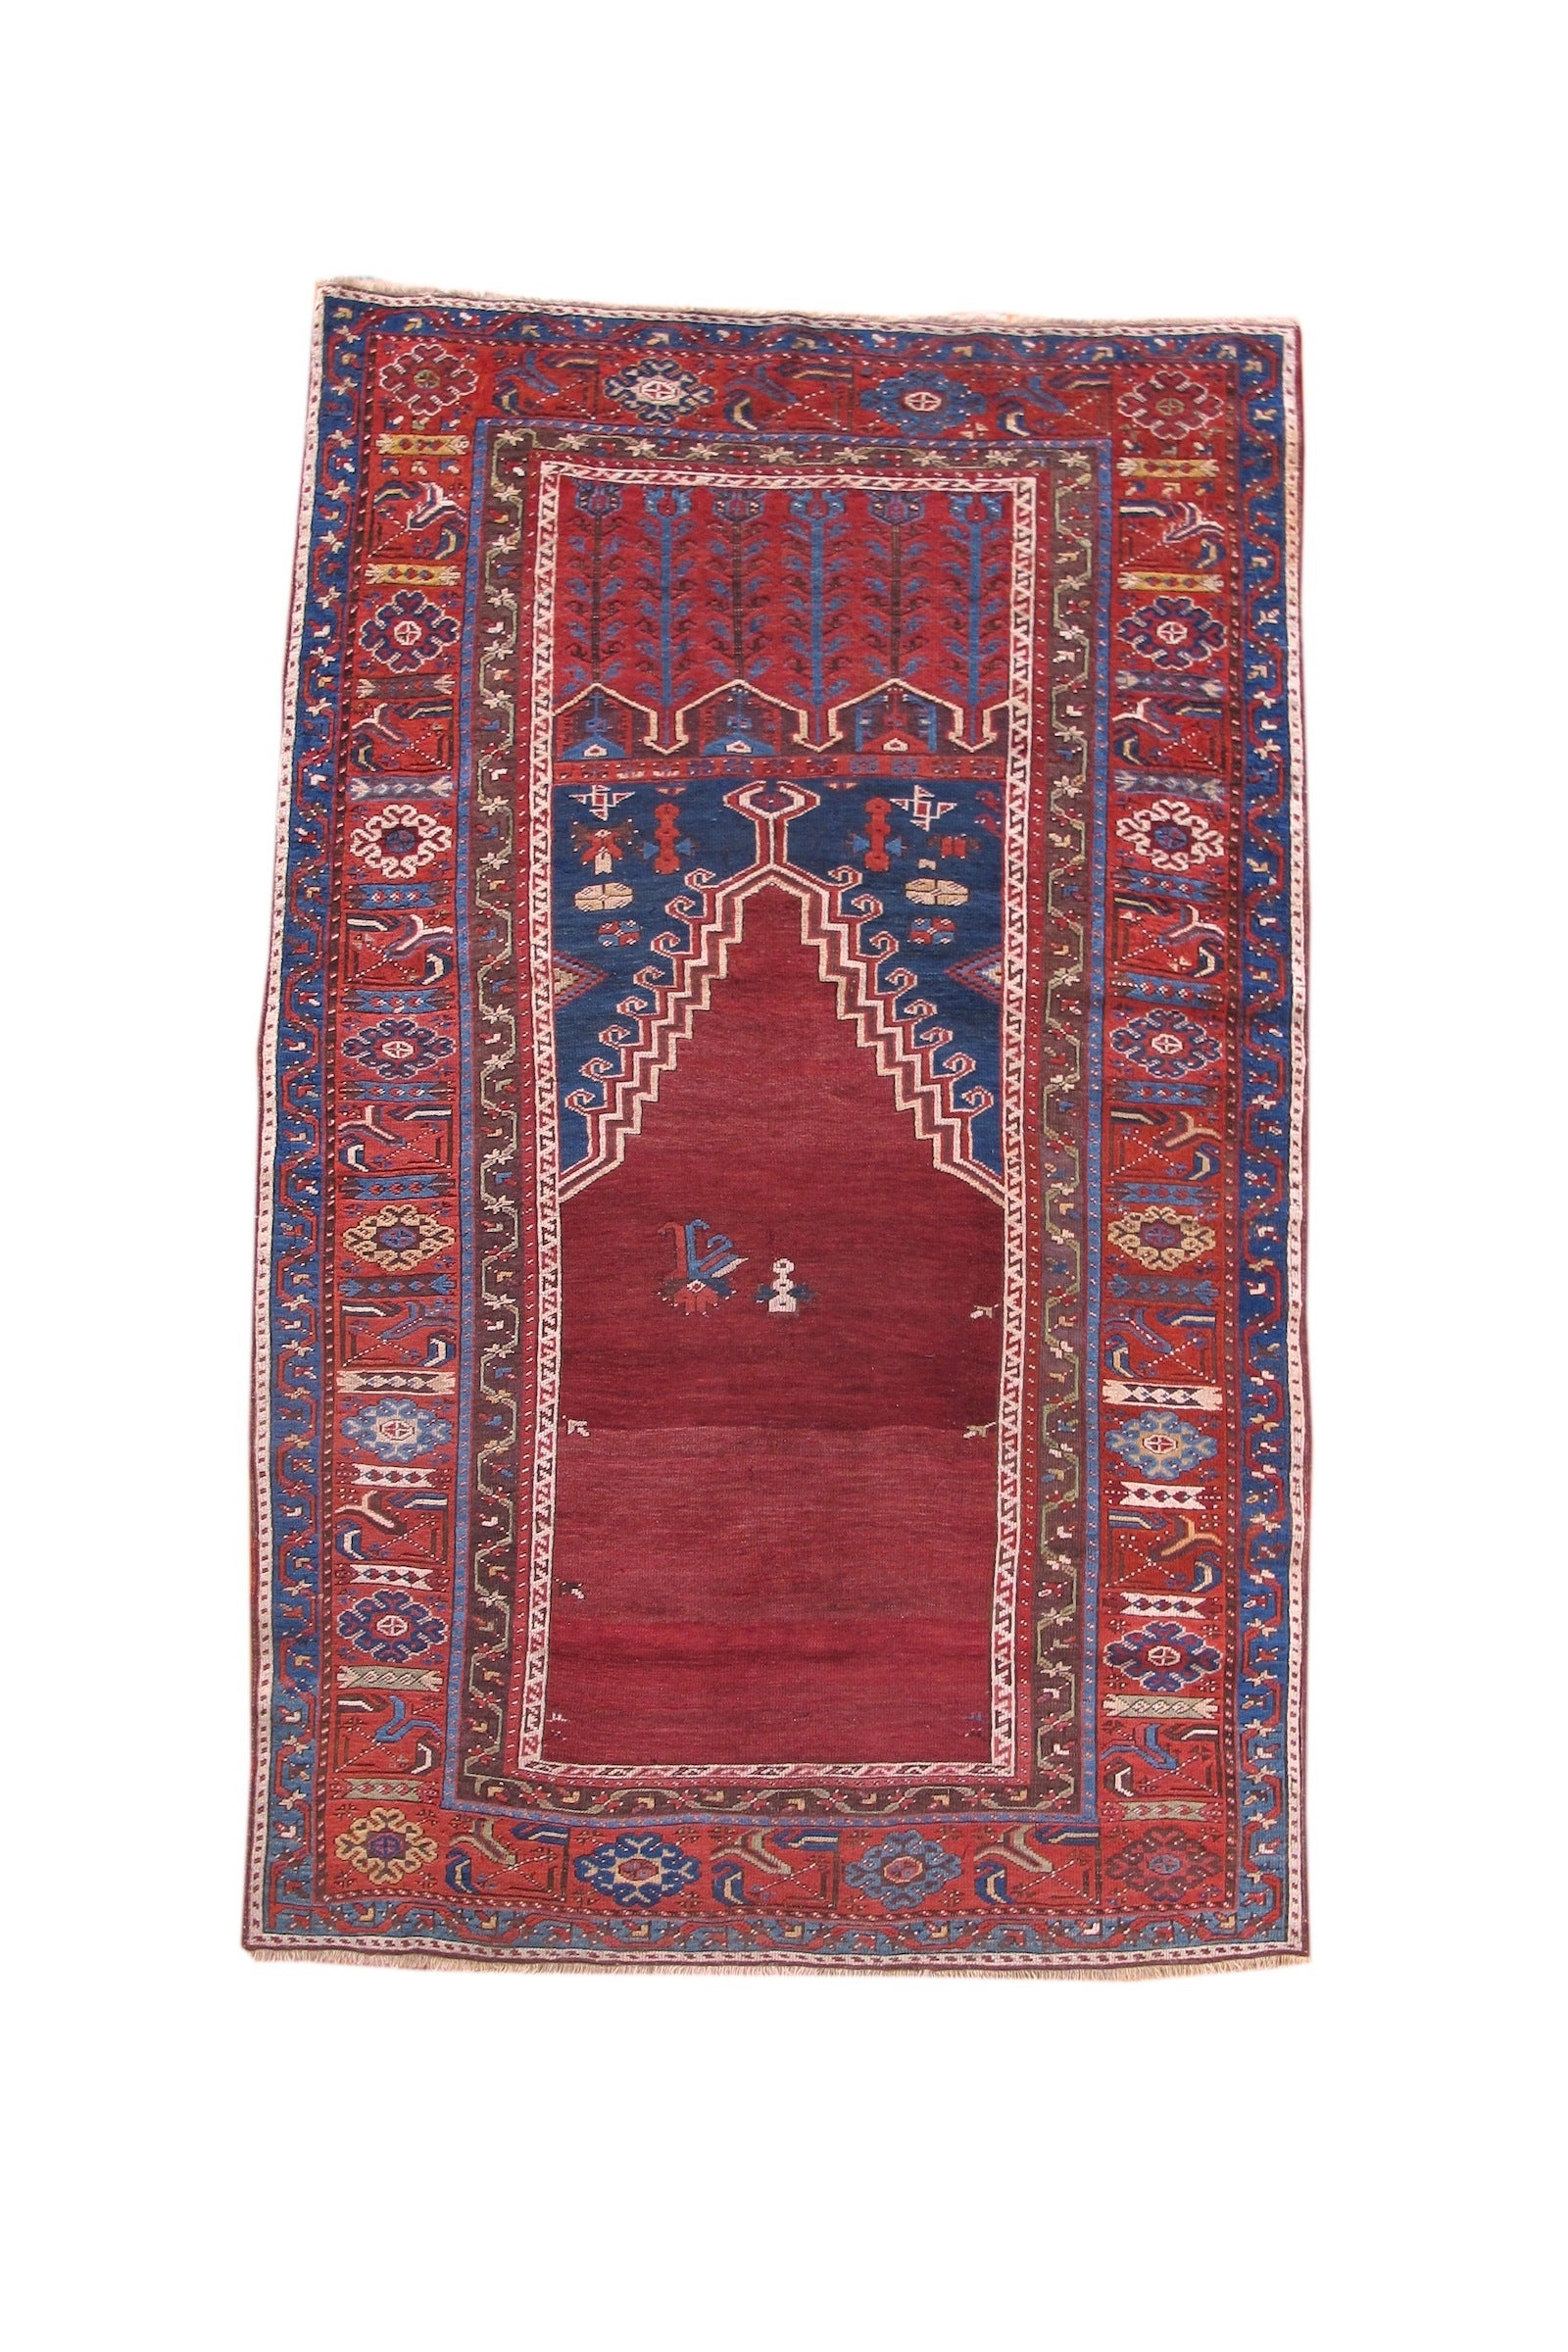 Roter türkischer Ladik-Teppich, Mitte des 19. Jahrhunderts